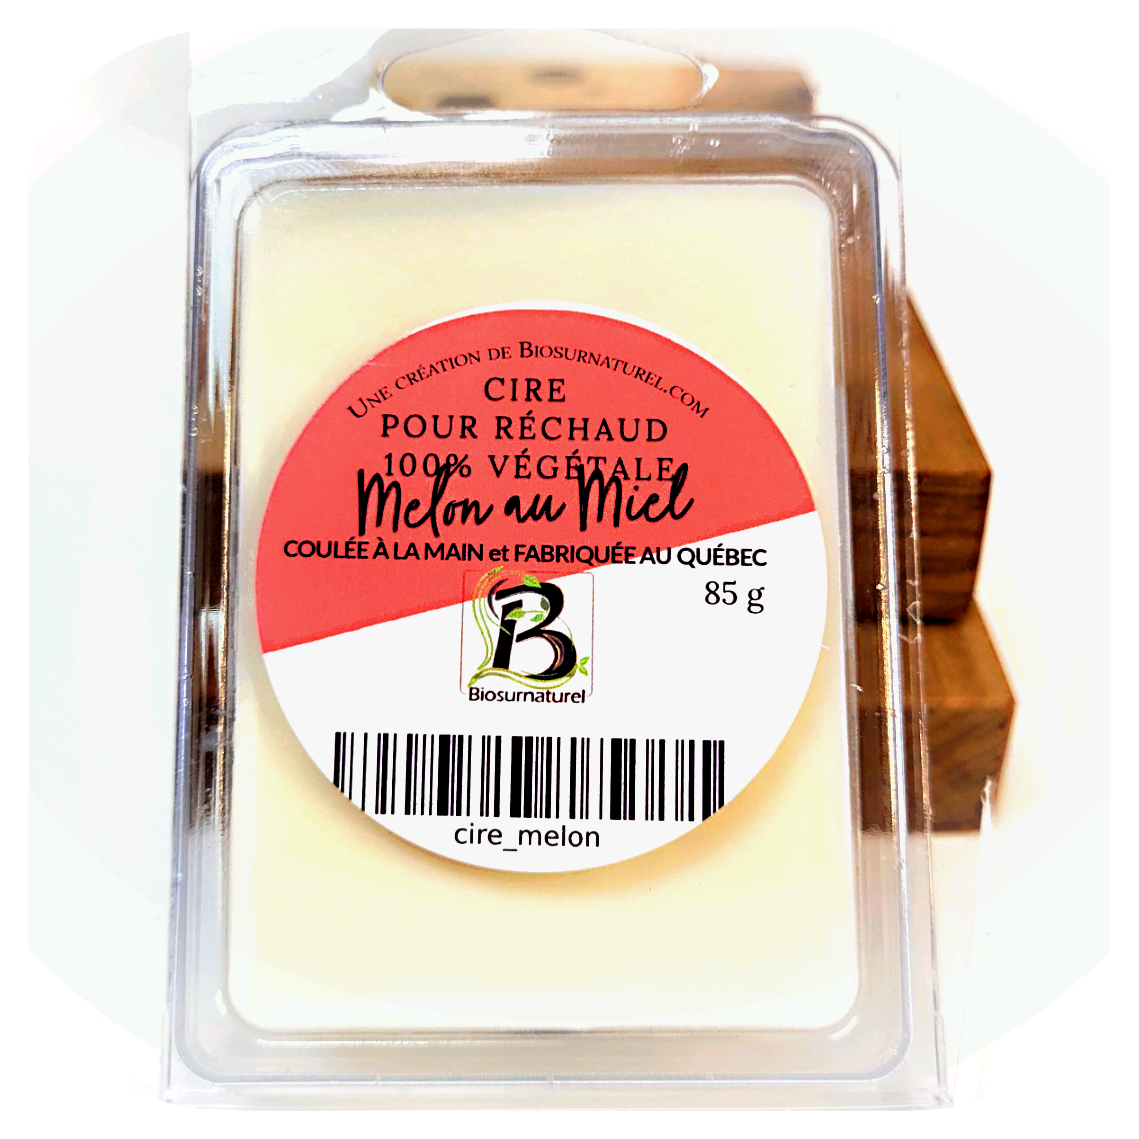 Cire à Réchaud parfumée - tartelettes - Melon au miel